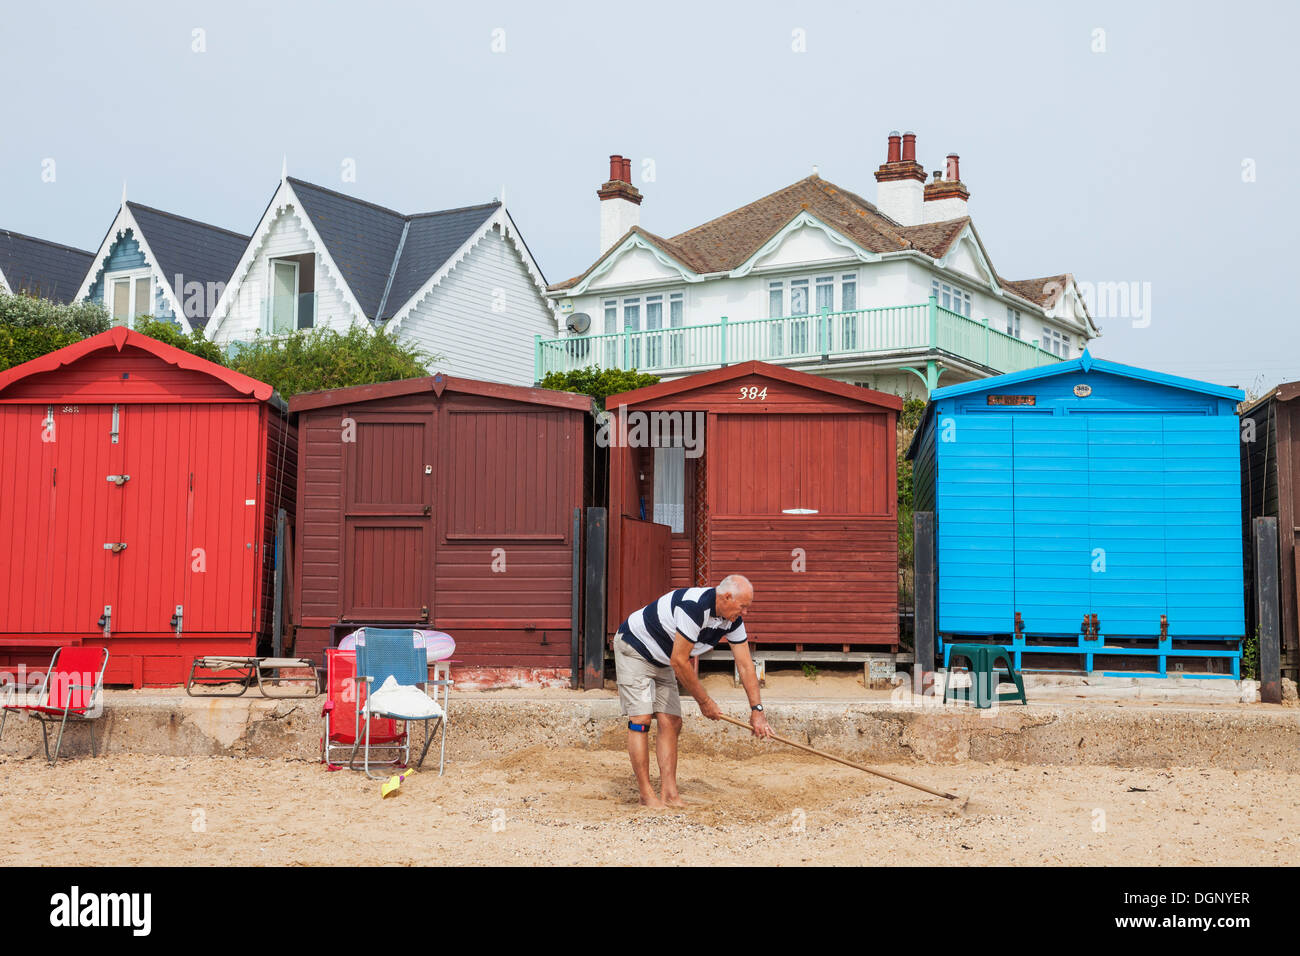 England, East Anglia, Essex, Walton-on-the-Naze, Beach Huts Stock Photo